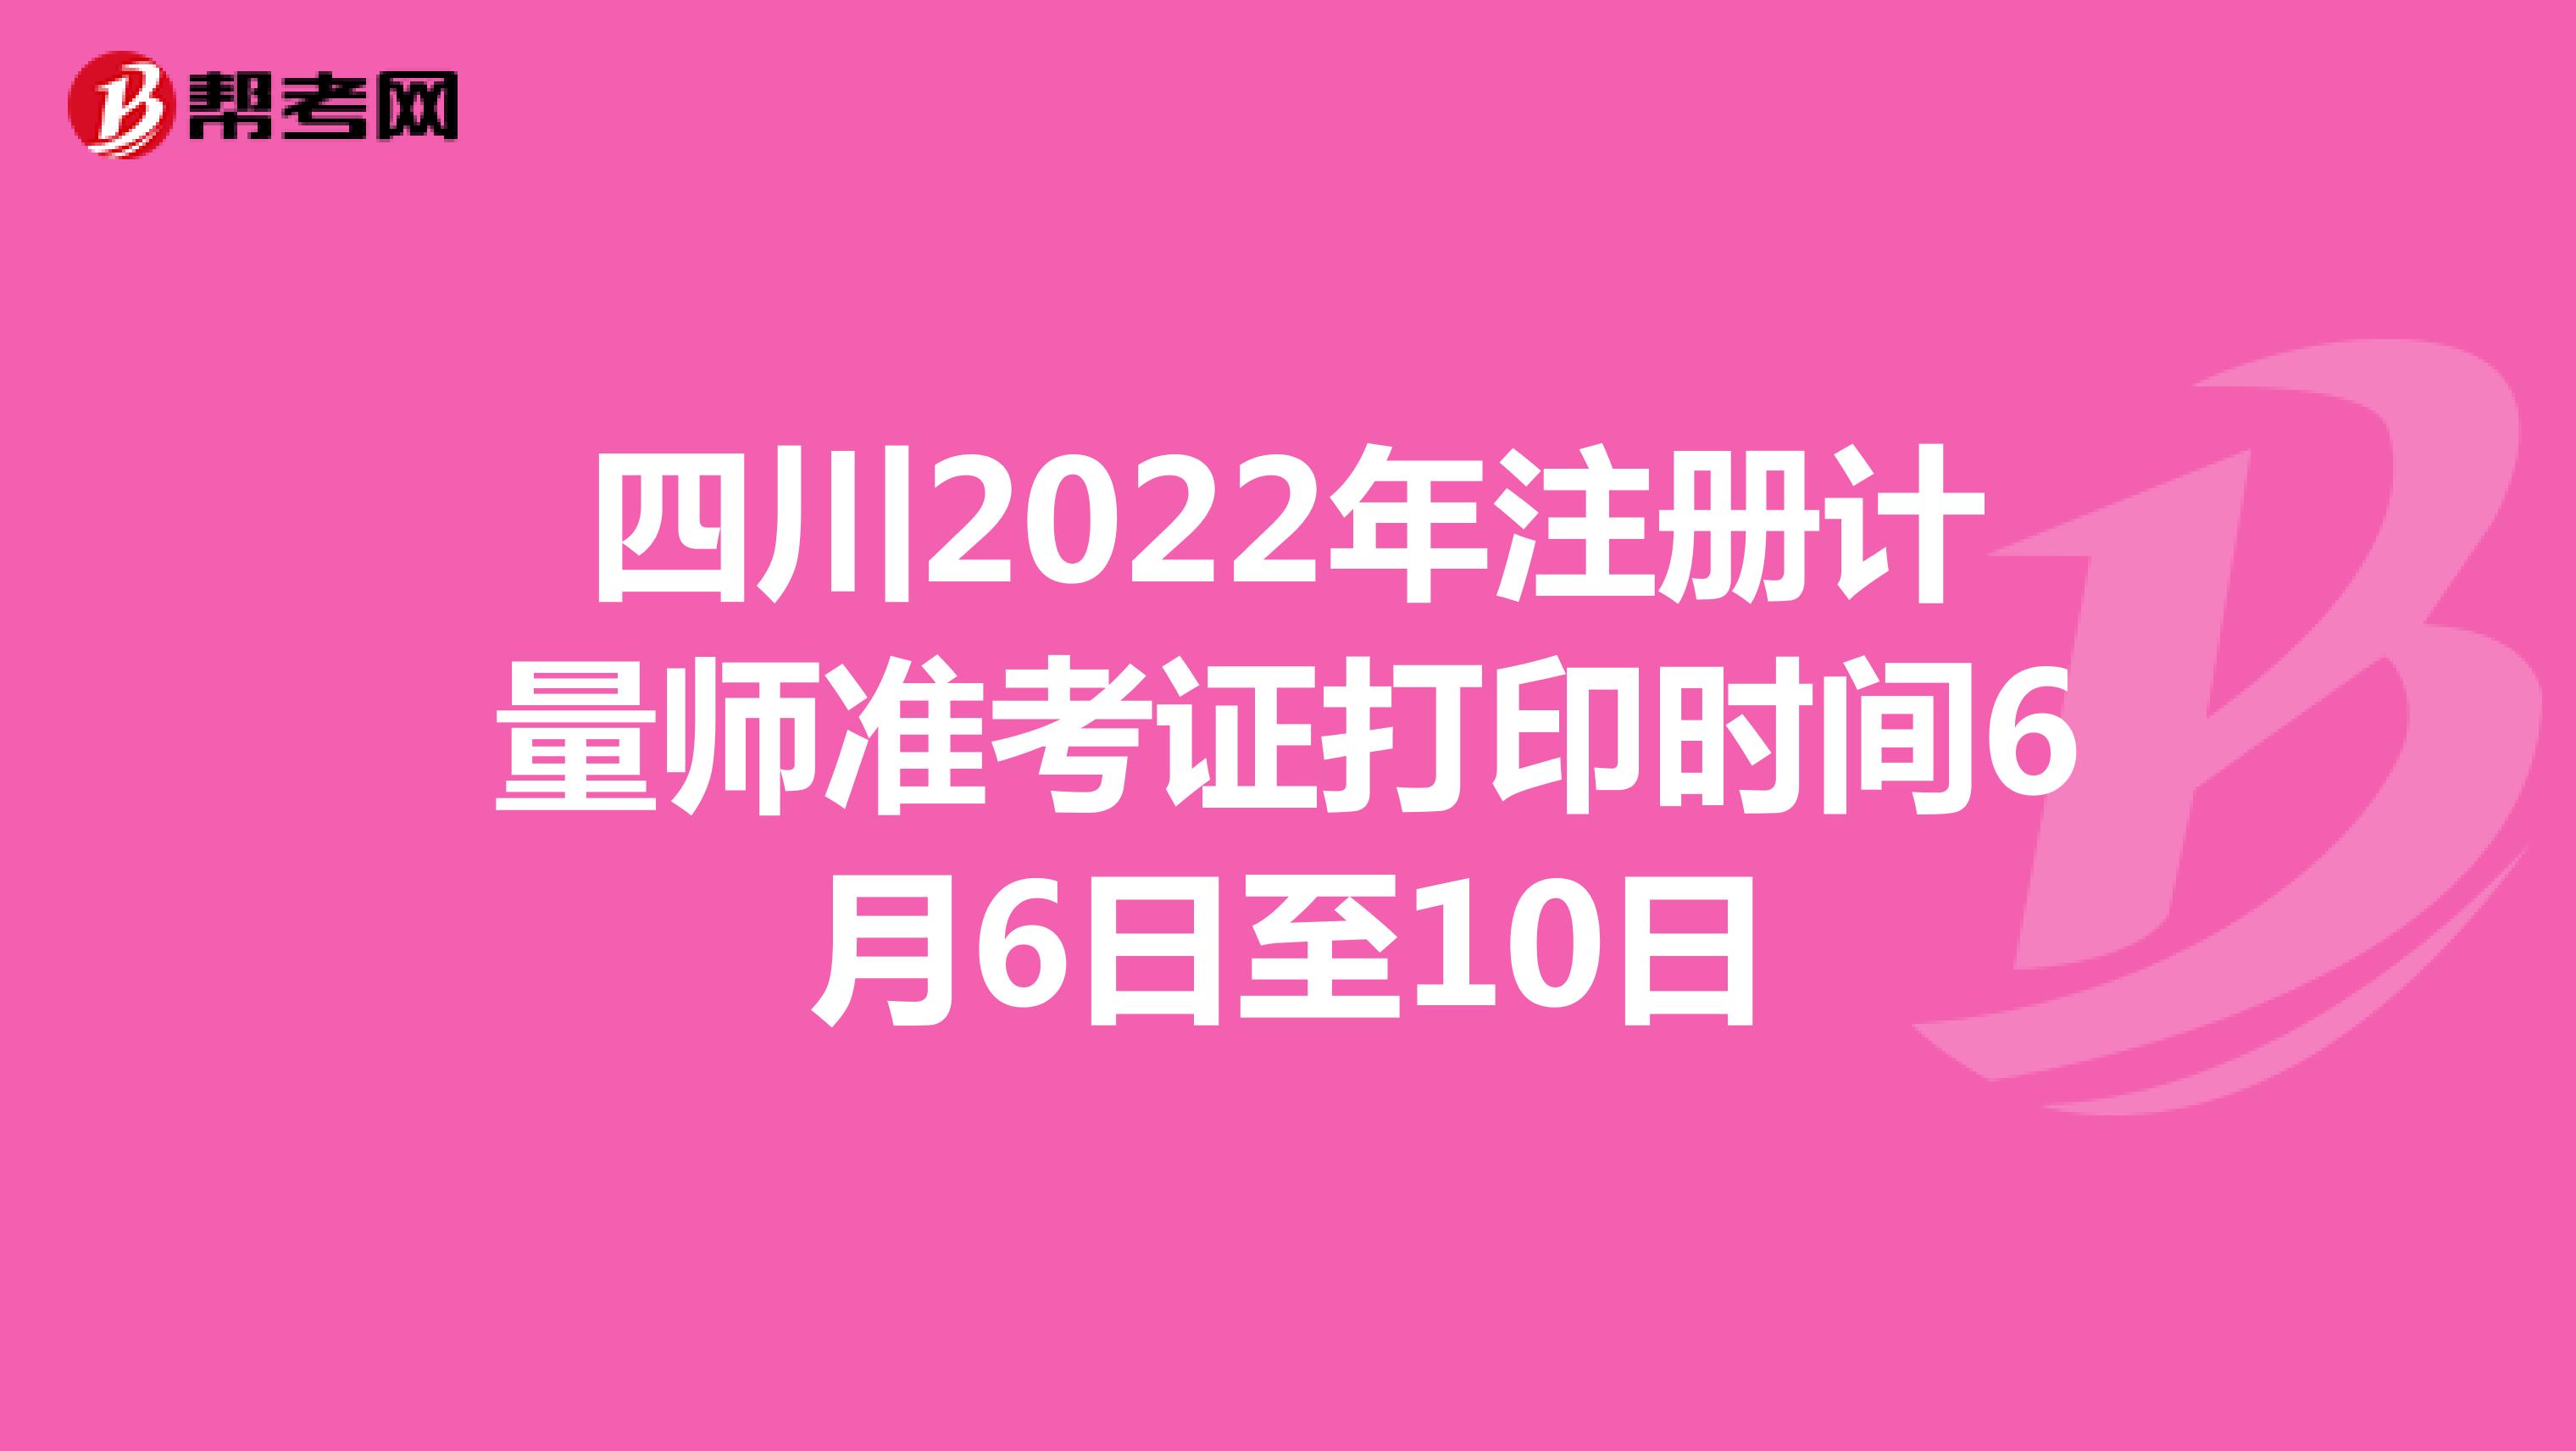 四川2022年注册计量师准考证打印时间6月6日至10日